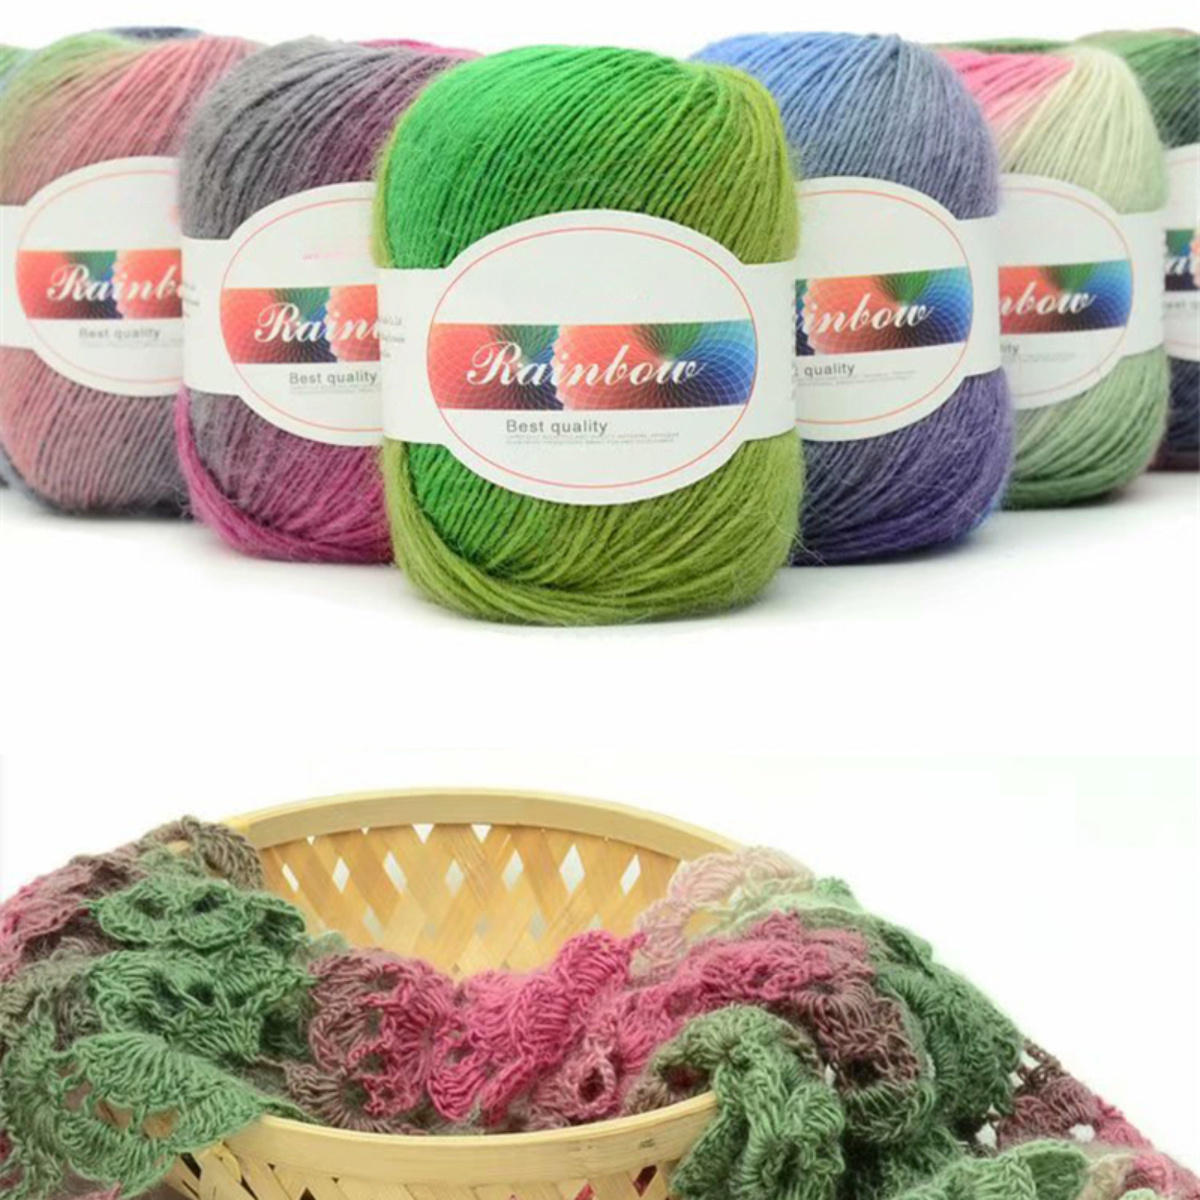 

1pc Rainbow Soft Yarn 70% Australian Wool 30% Imported Nylon Gradient Multi Color Yarn For Crocheting Knit Diy Hand Knitting Yarn 140m 50g